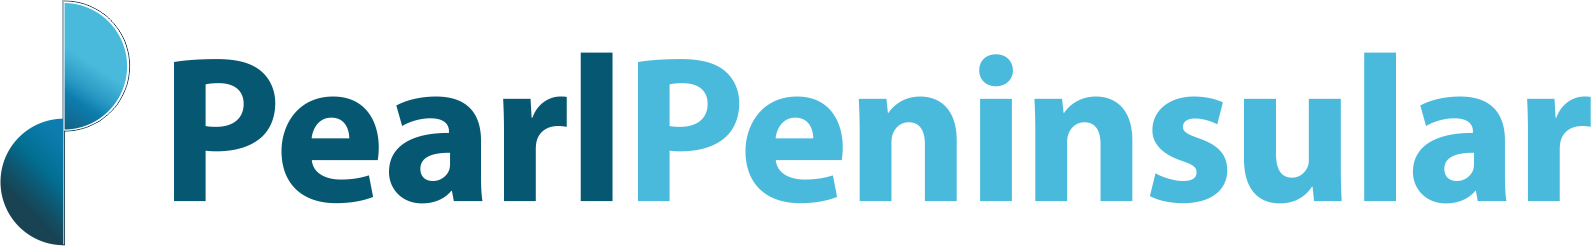 Pearl Peninsular